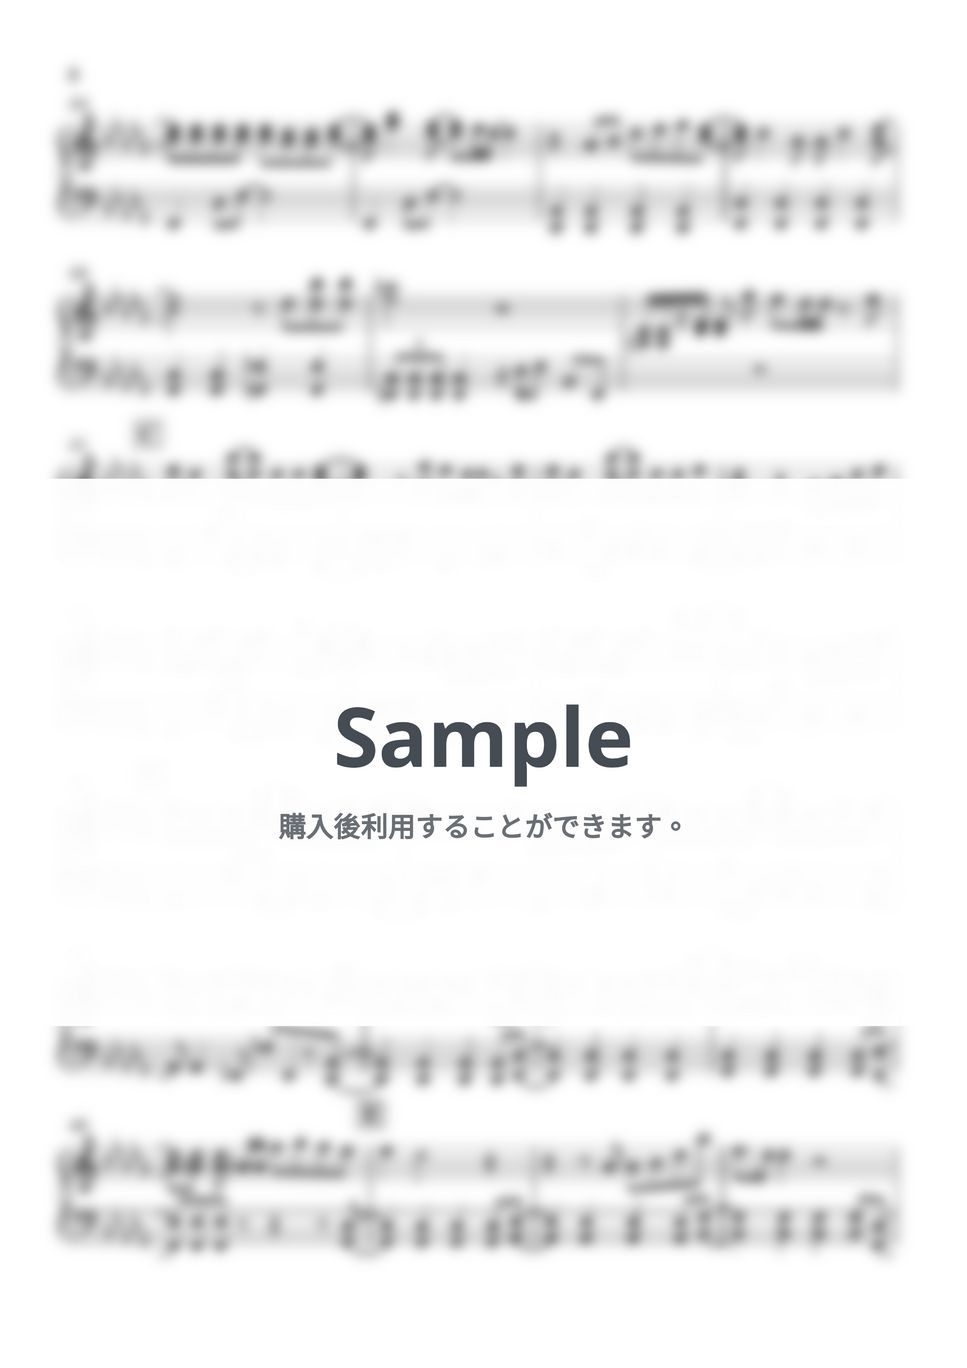 キタニタツヤ - 青のすみか (呪術廻戦 / ピアノ楽譜 / 初級) by Piano Lovers. jp